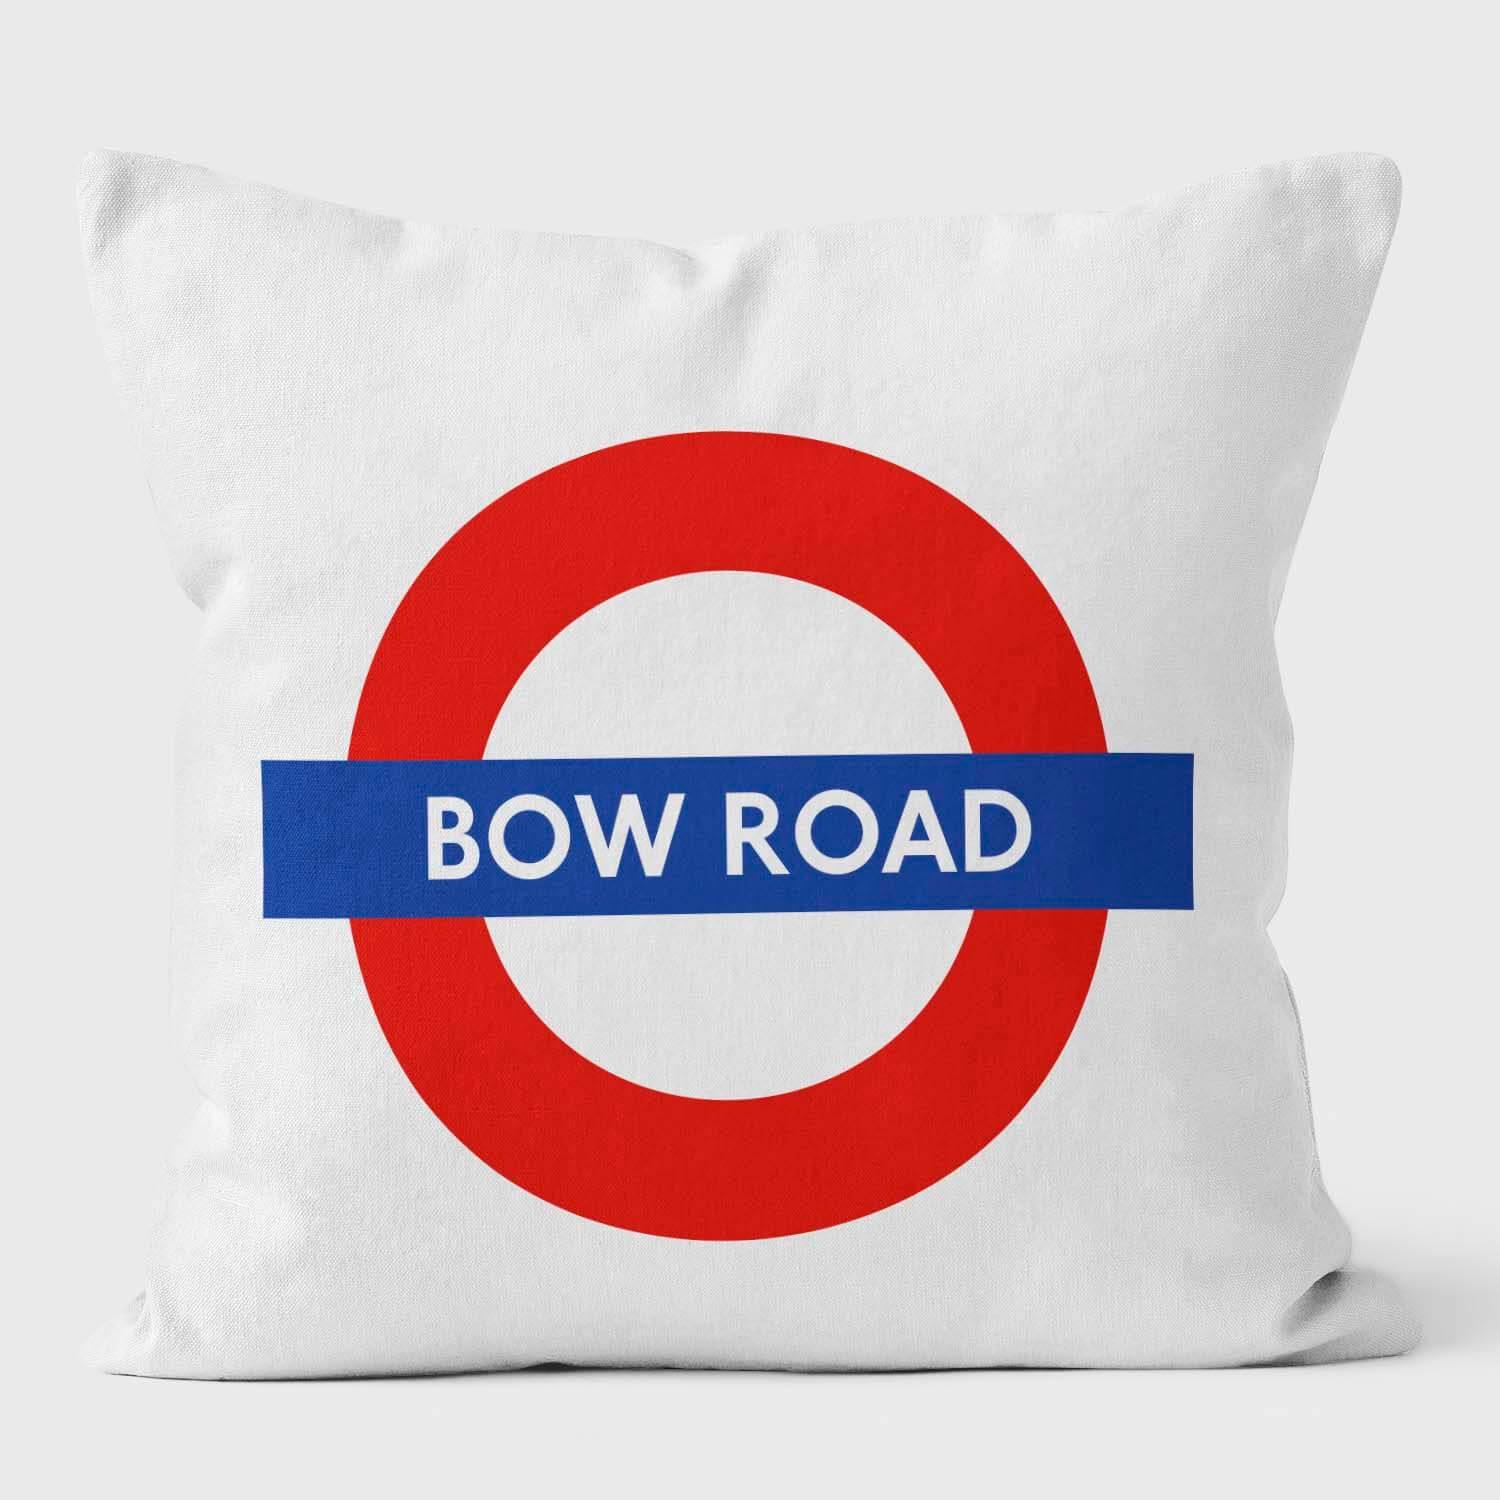 Bow Road London Underground Tube Station Roundel Cushion - Handmade Cushions UK - WeLoveCushions